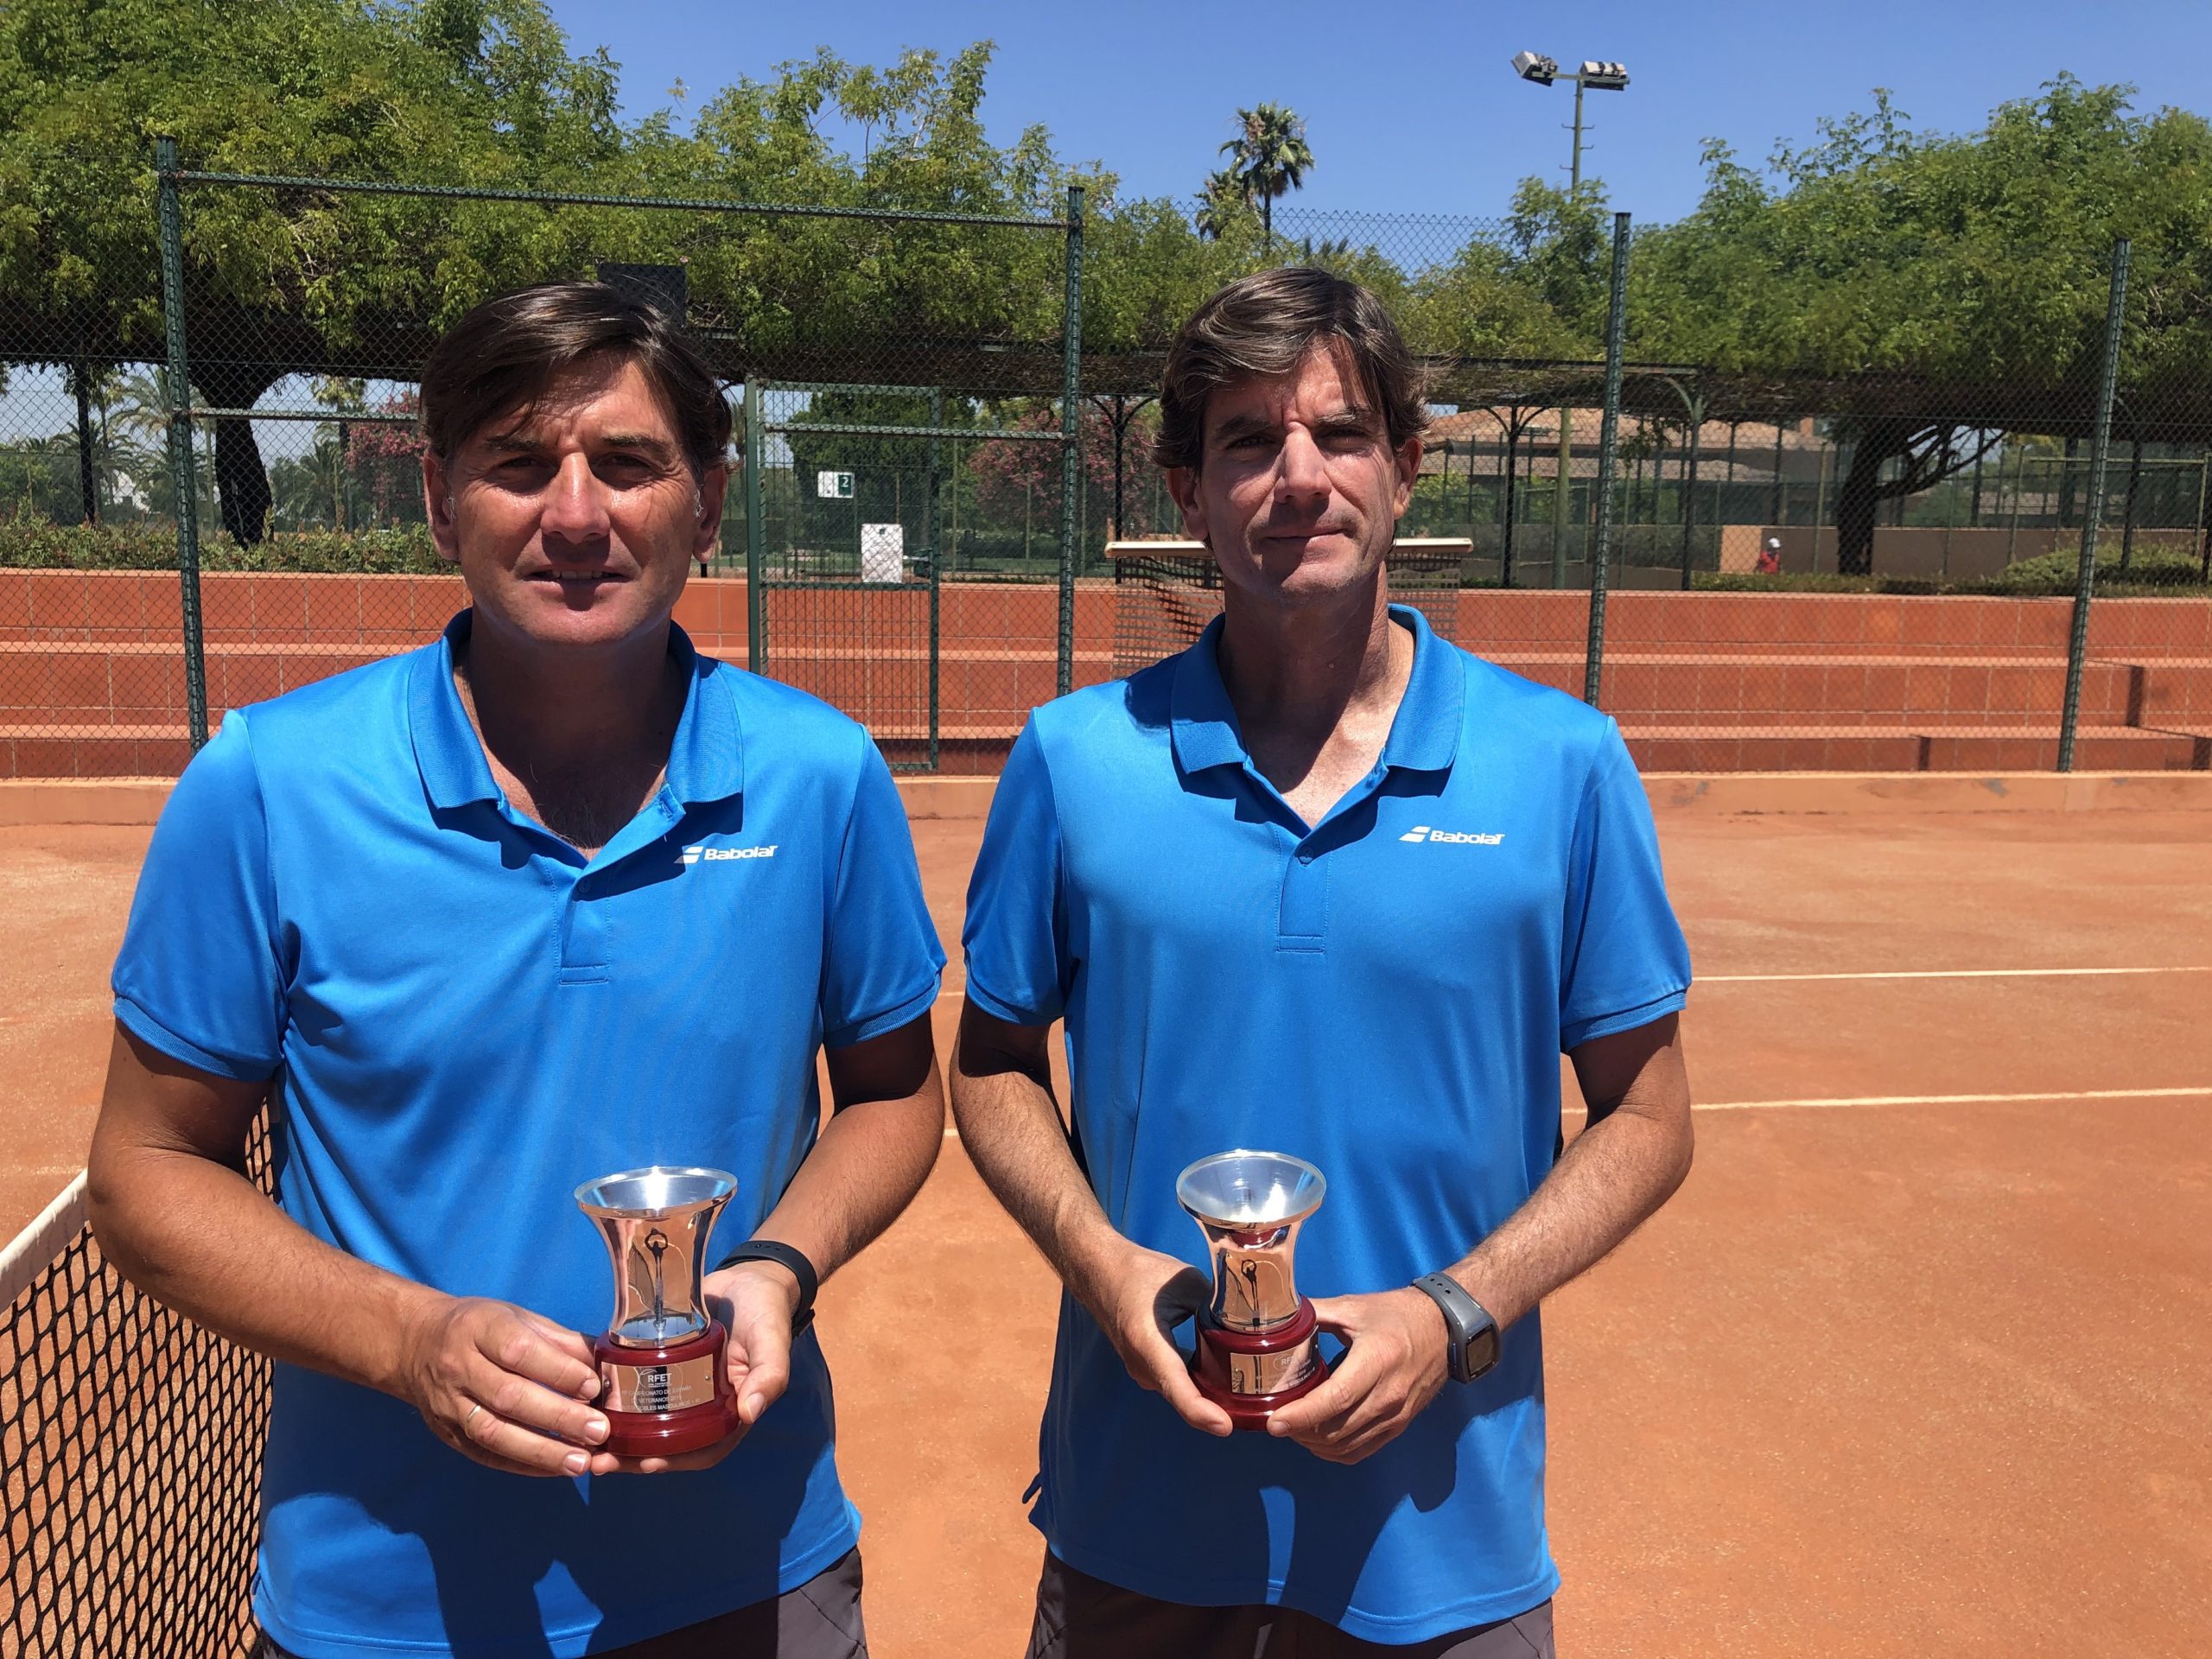 Nuestros entrenadores, Fernando Hernandis y Manuel Fernandez, subcampeones de España de tenis +40